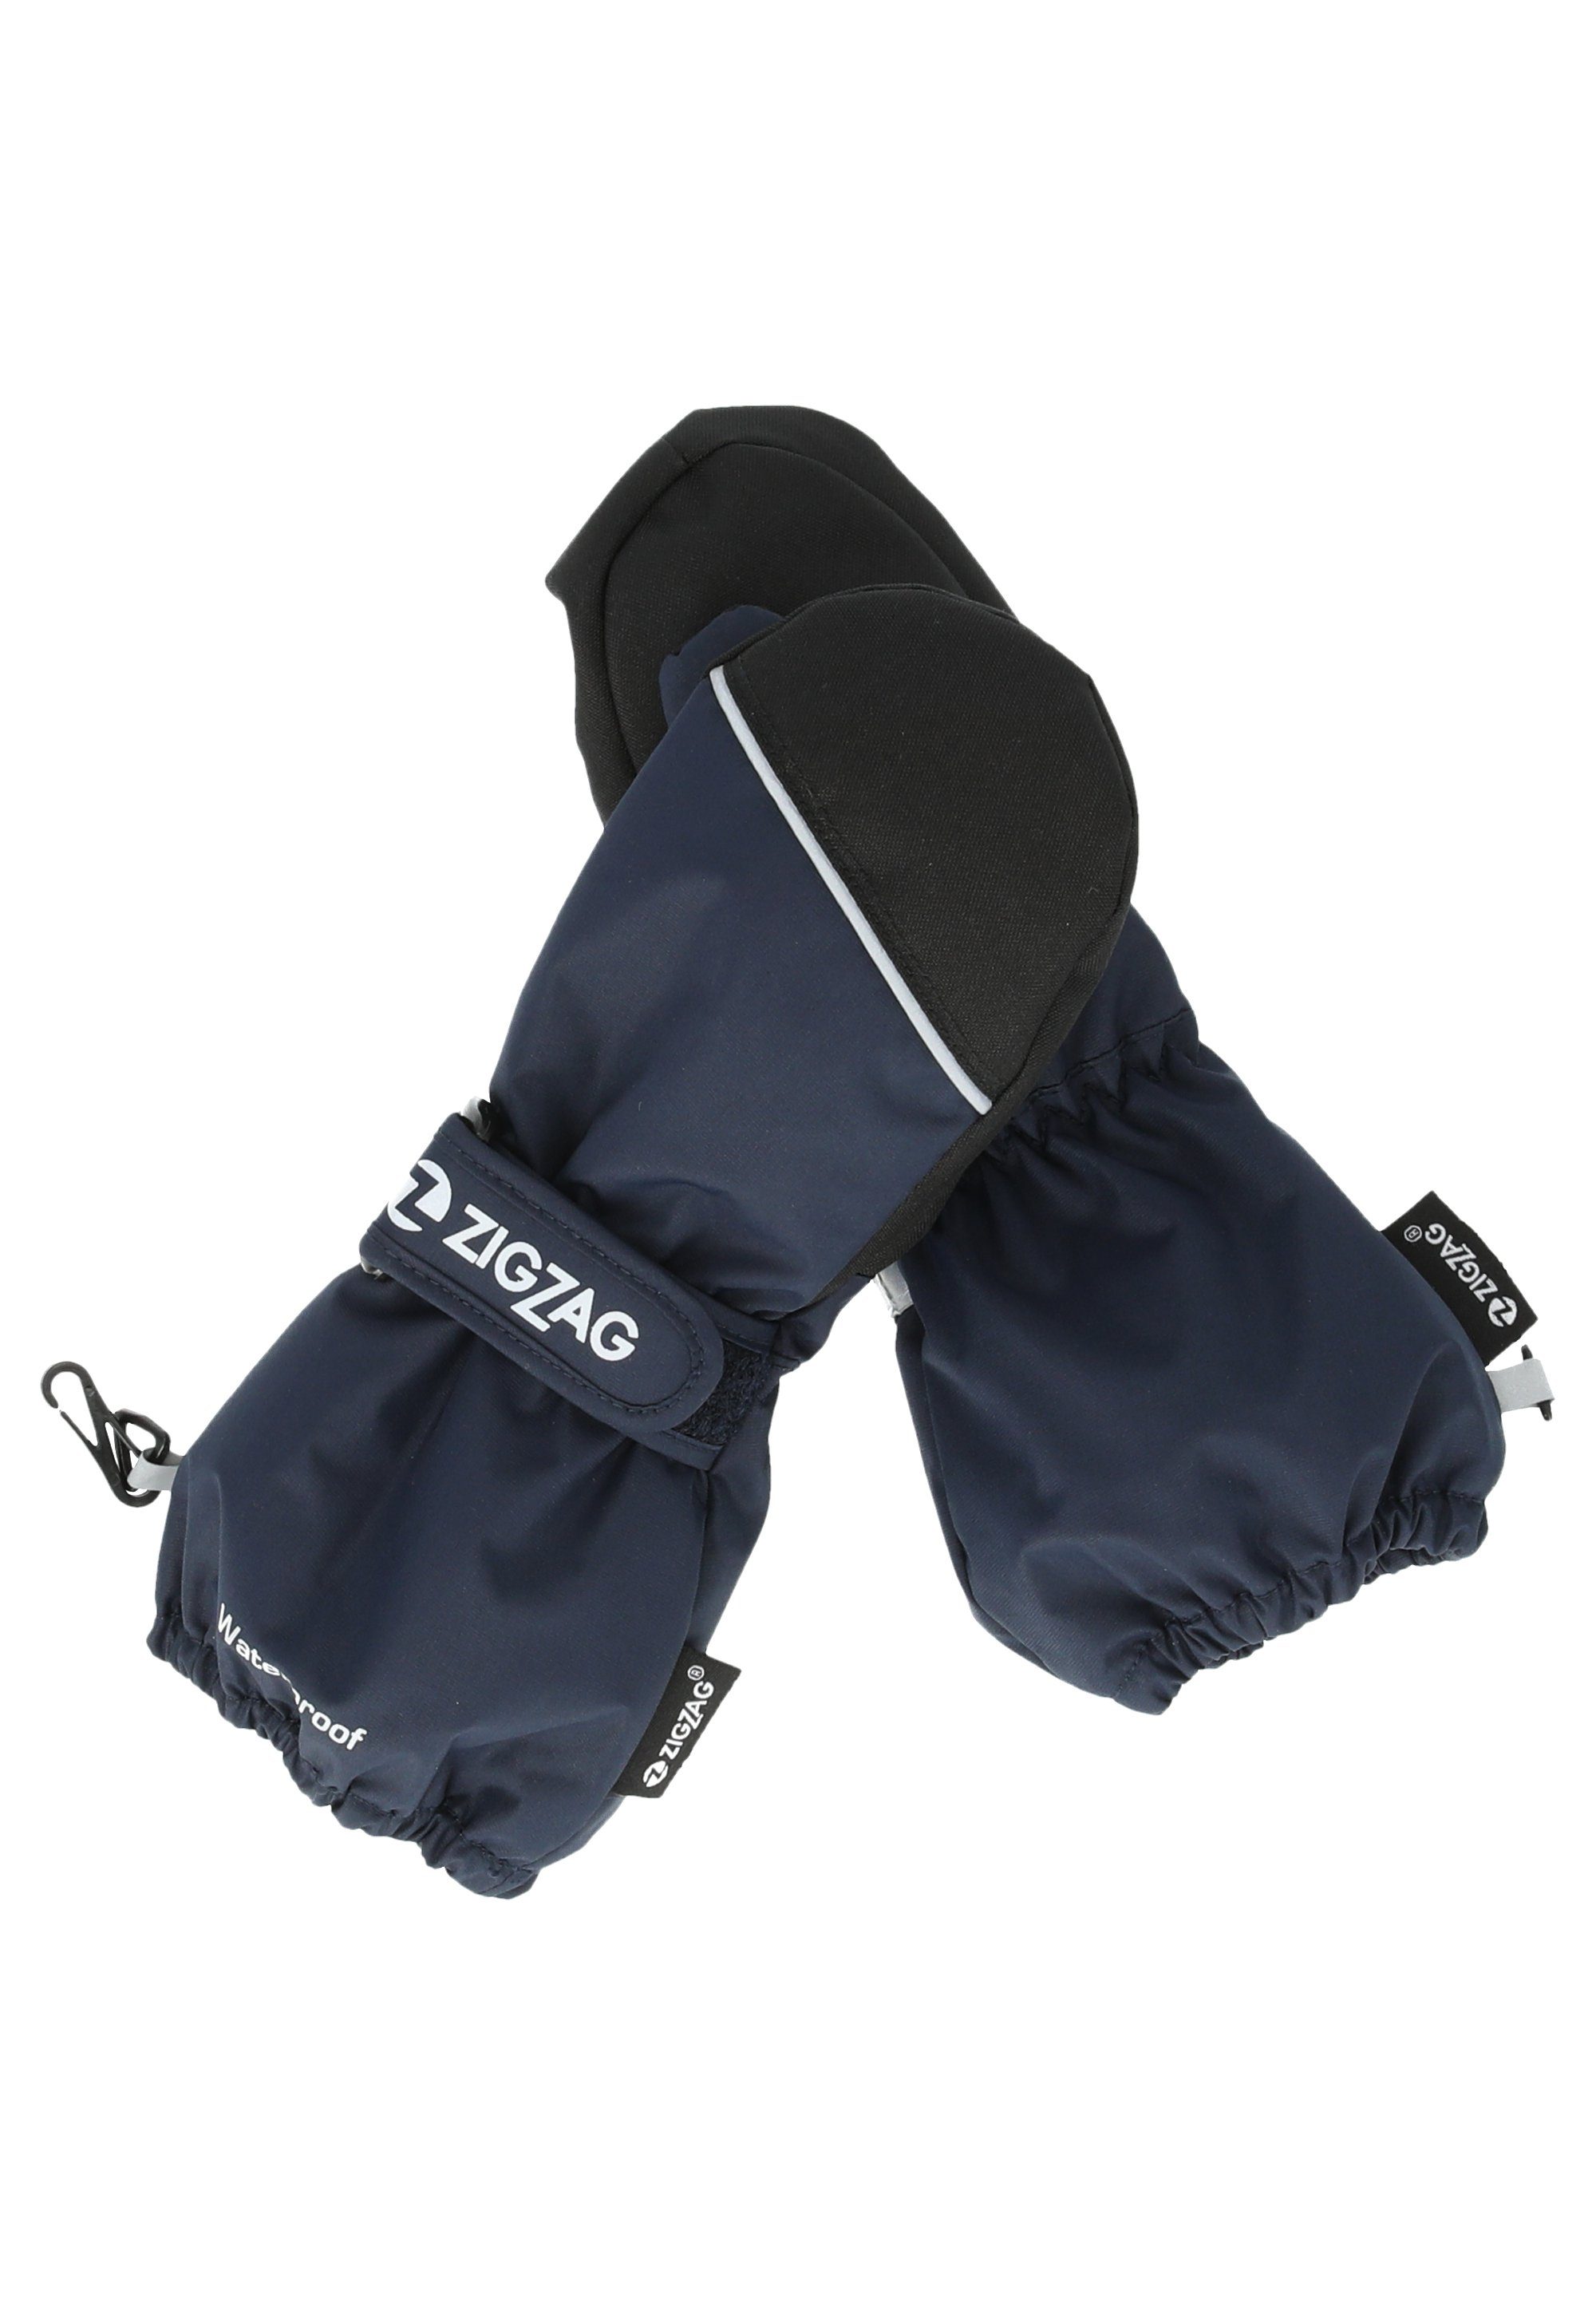 Wintersport-Ausstattung Skihandschuhe mit komfortabler dunkelblau Kempston ZIGZAG